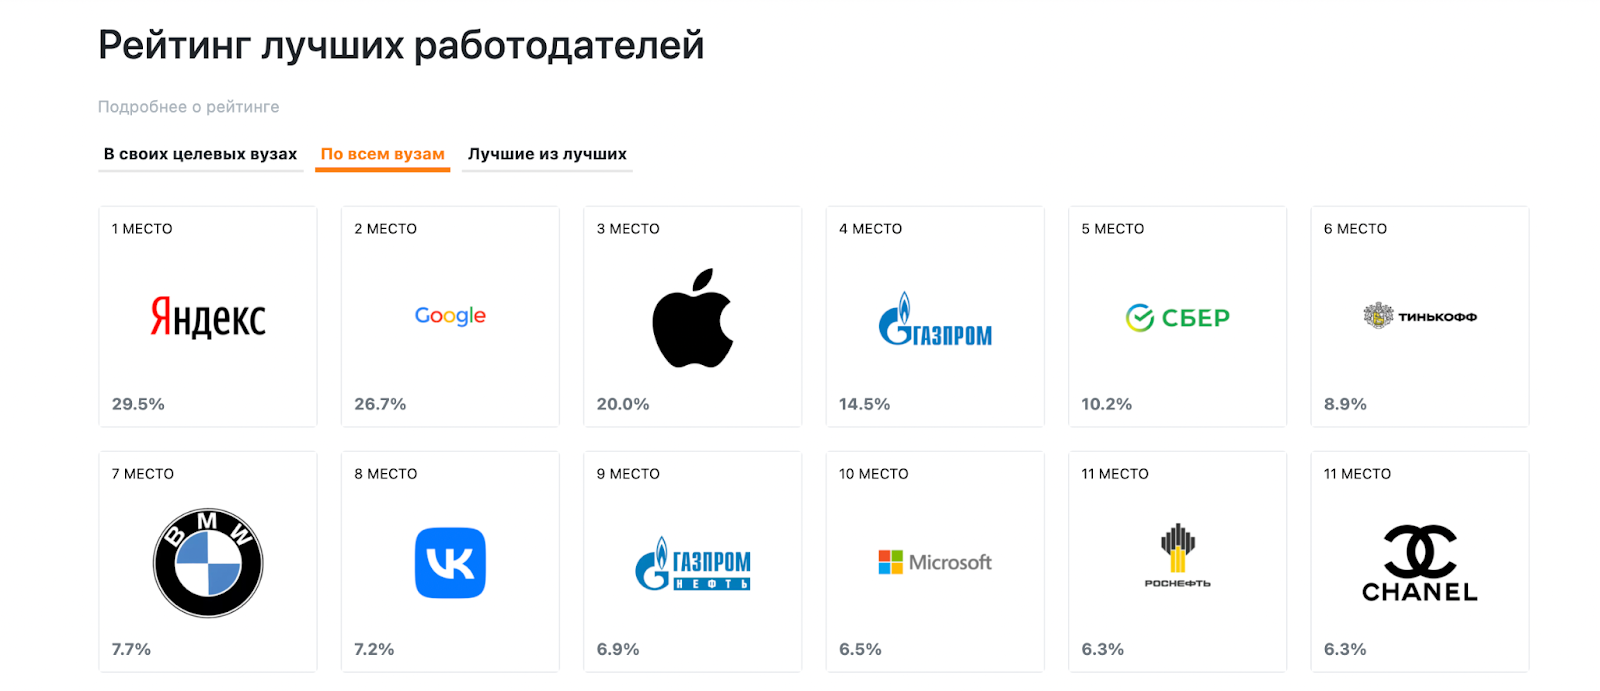 Студенты ведущих российских вузов хотели бы работать в «Яндексе», Google, Apple и «Газпроме»